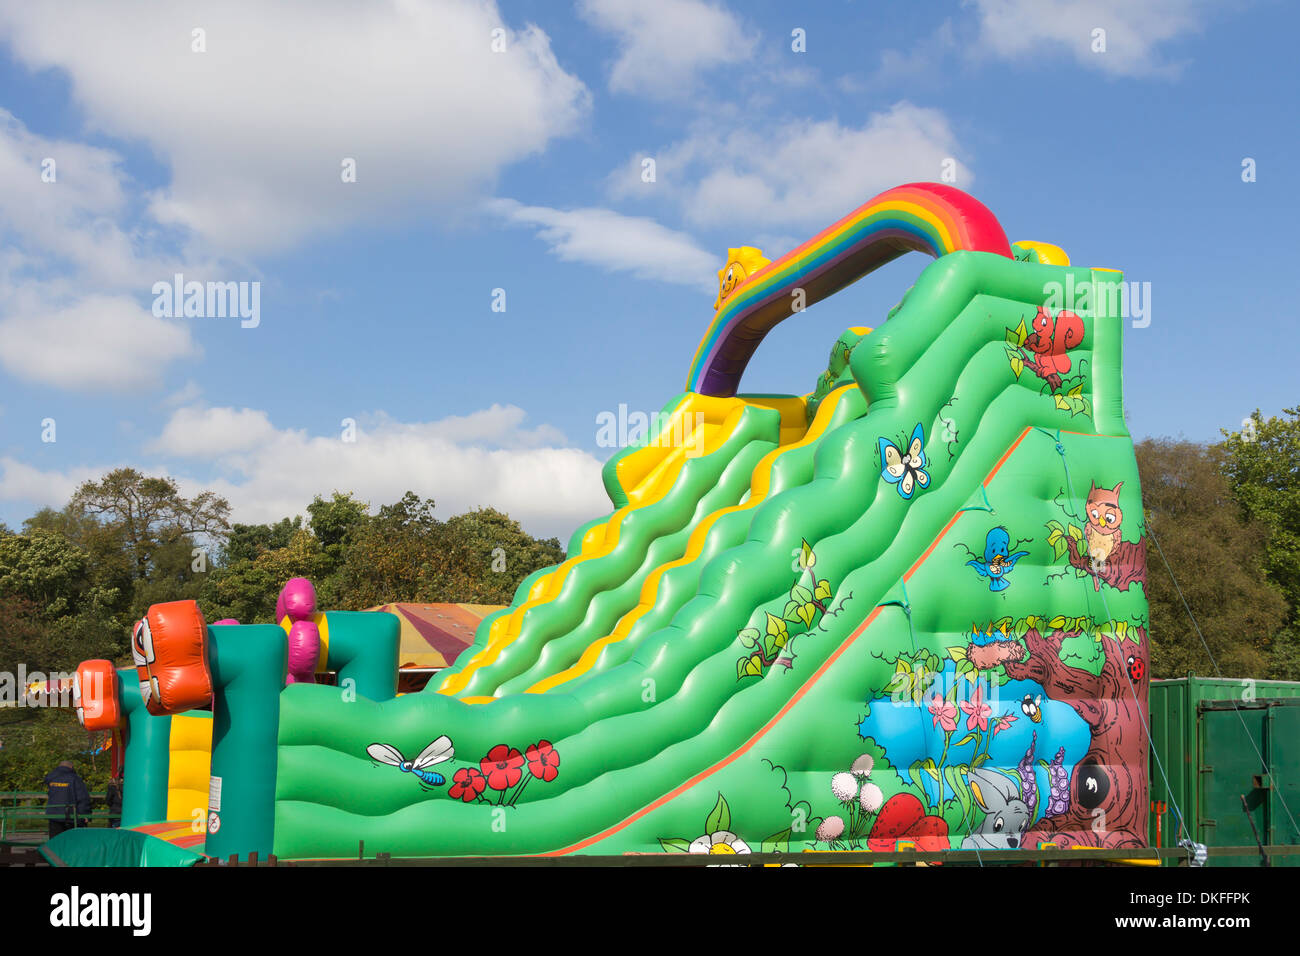 El tobogán inflable gigante tipo castillo hinchable en Banco Moss Park,  Bolton, Lancashire, parte de la permanente pequeño parque de atracciones  Fotografía de stock - Alamy